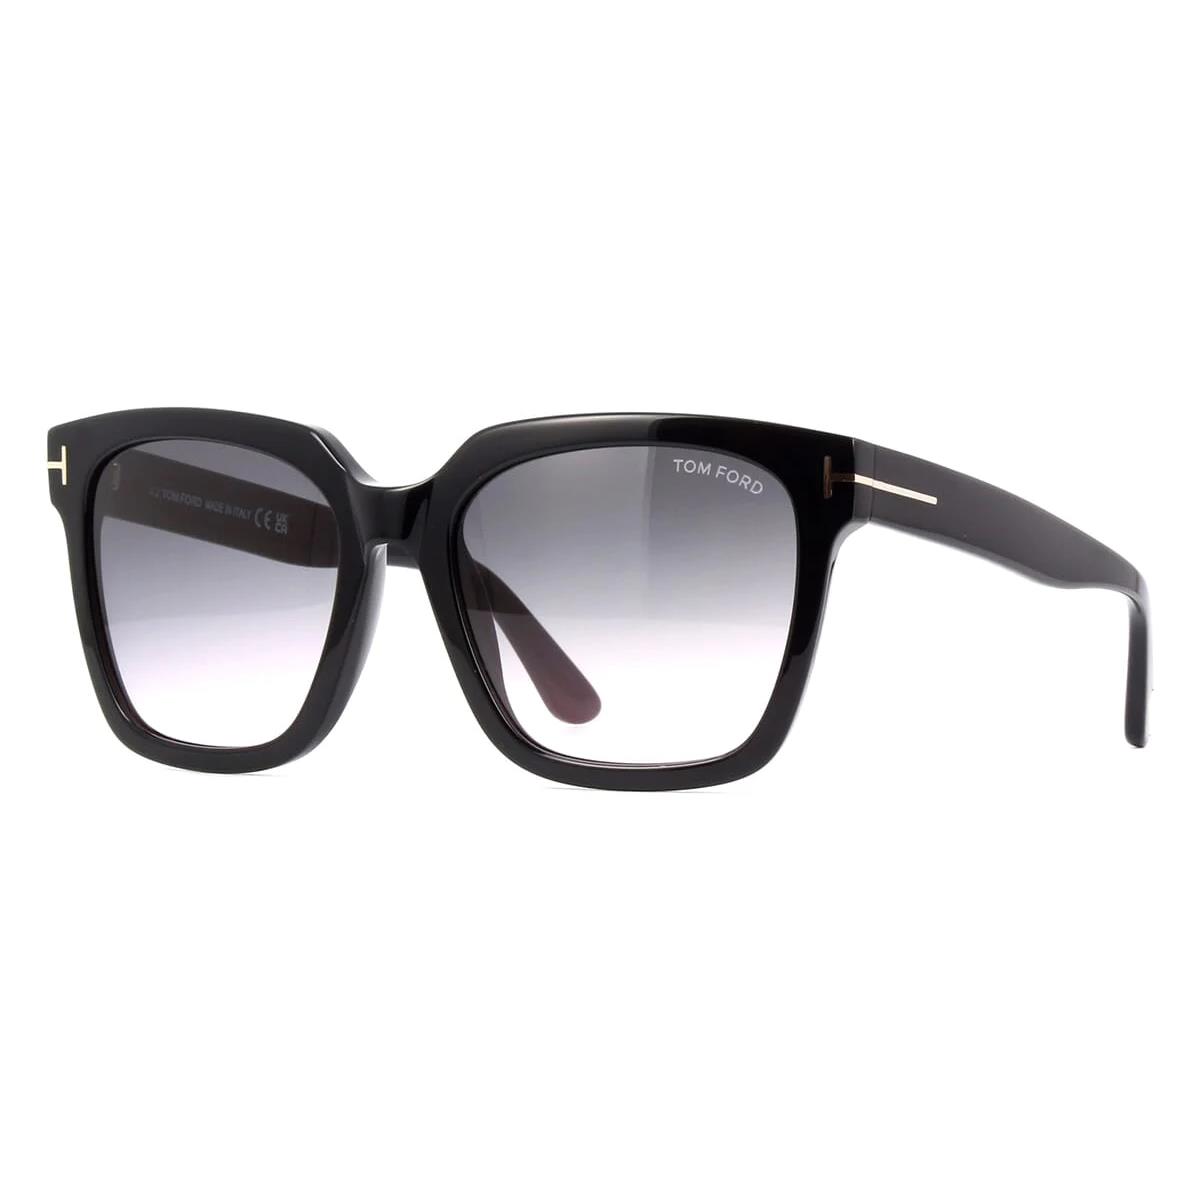 Tom Ford Sunglasses TF952 01B Selby Black Frames Gray Lens 55MM - Black Frame, Gray Lens